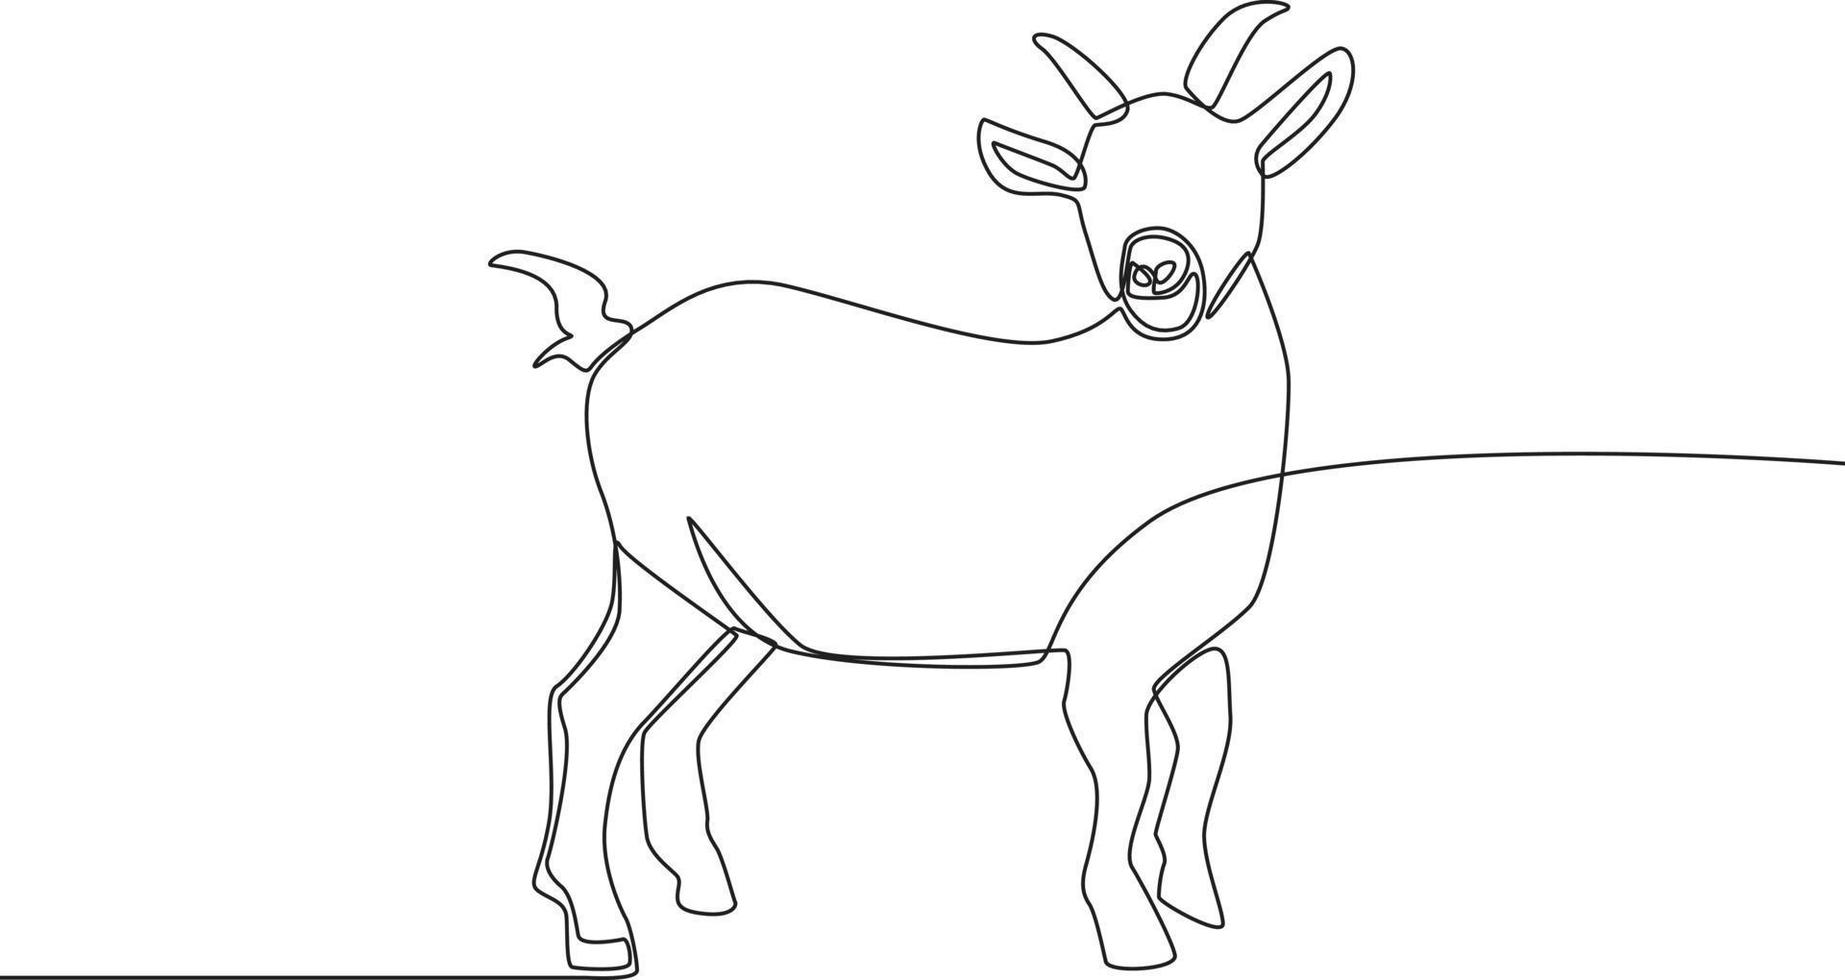 una sola linea disegnando una capra per il sacrificio. felice eid al adha. illustrazione vettoriale grafica di disegno a linea continua.